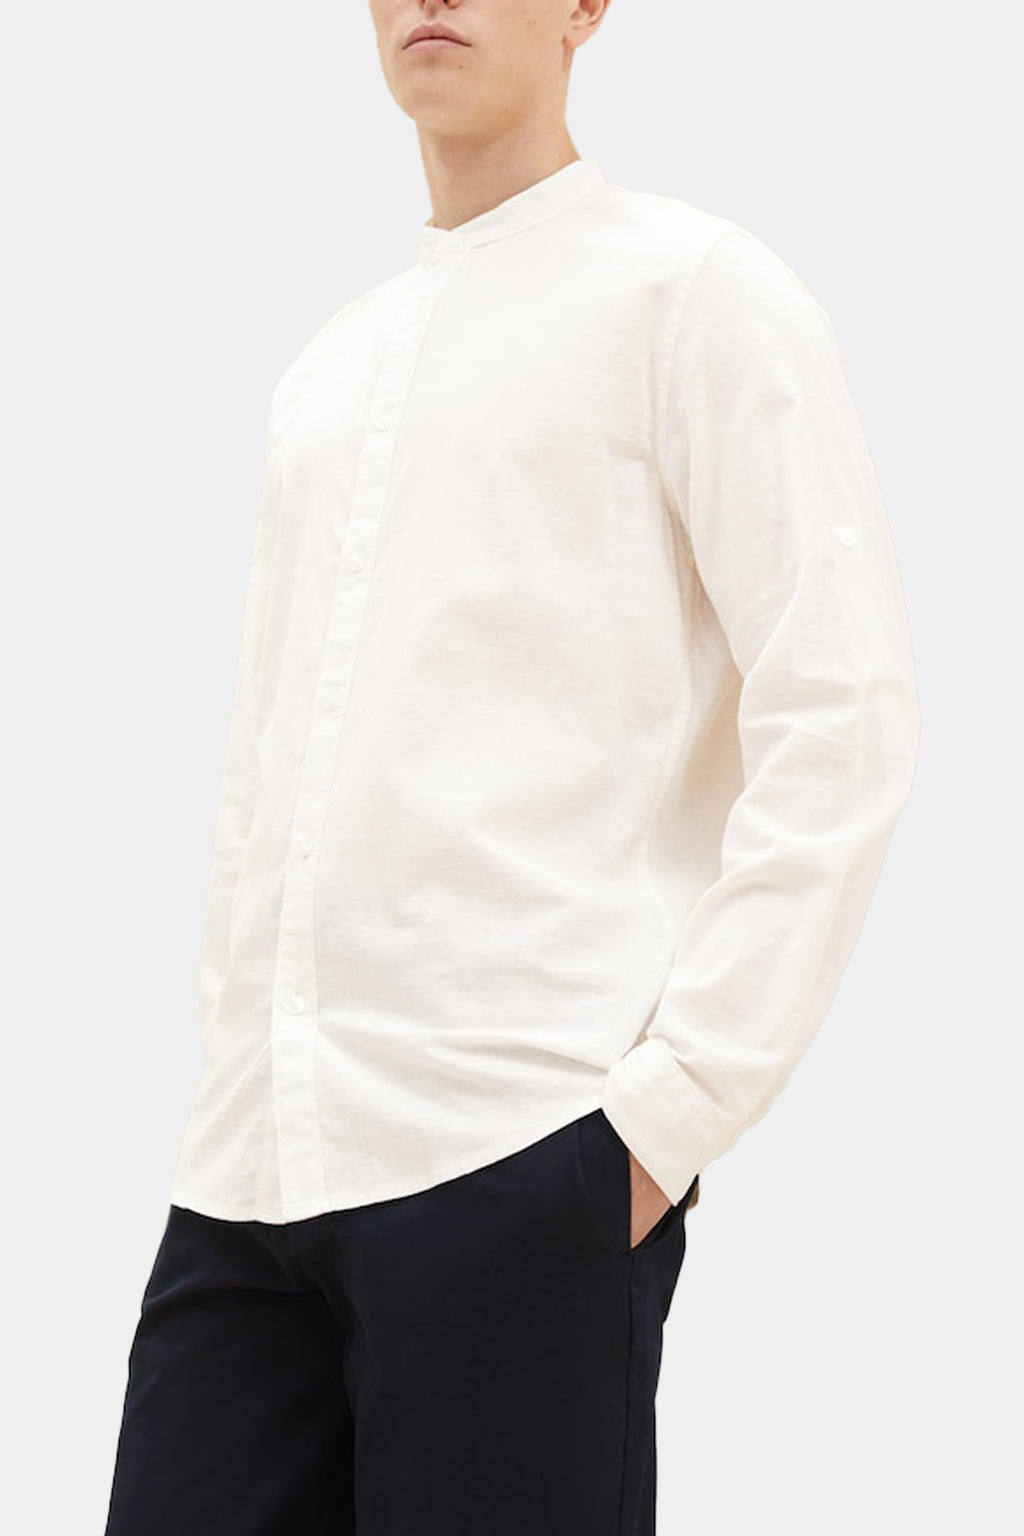 Tom Tailor - Men's Long-sleeved Shirt